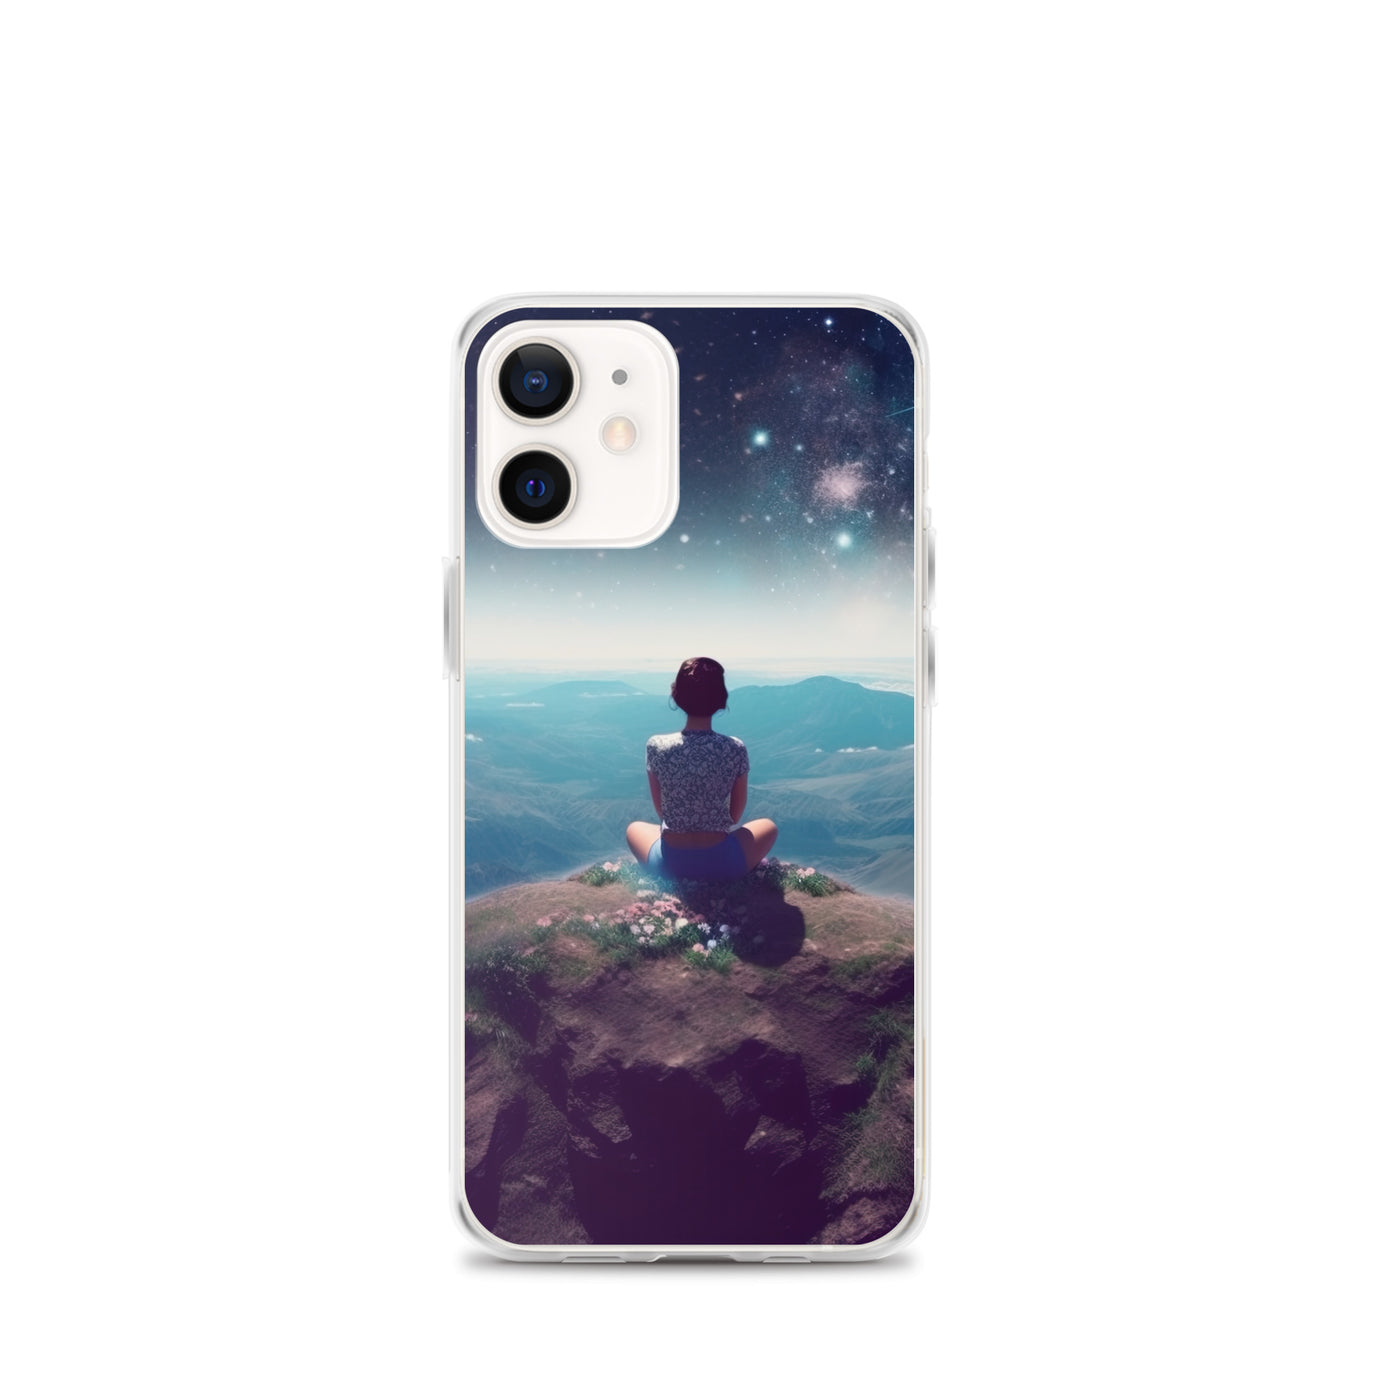 Frau sitzt auf Berg – Cosmos und Sterne im Hintergrund - Landschaftsmalerei - iPhone Schutzhülle (durchsichtig) berge xxx iPhone 12 mini